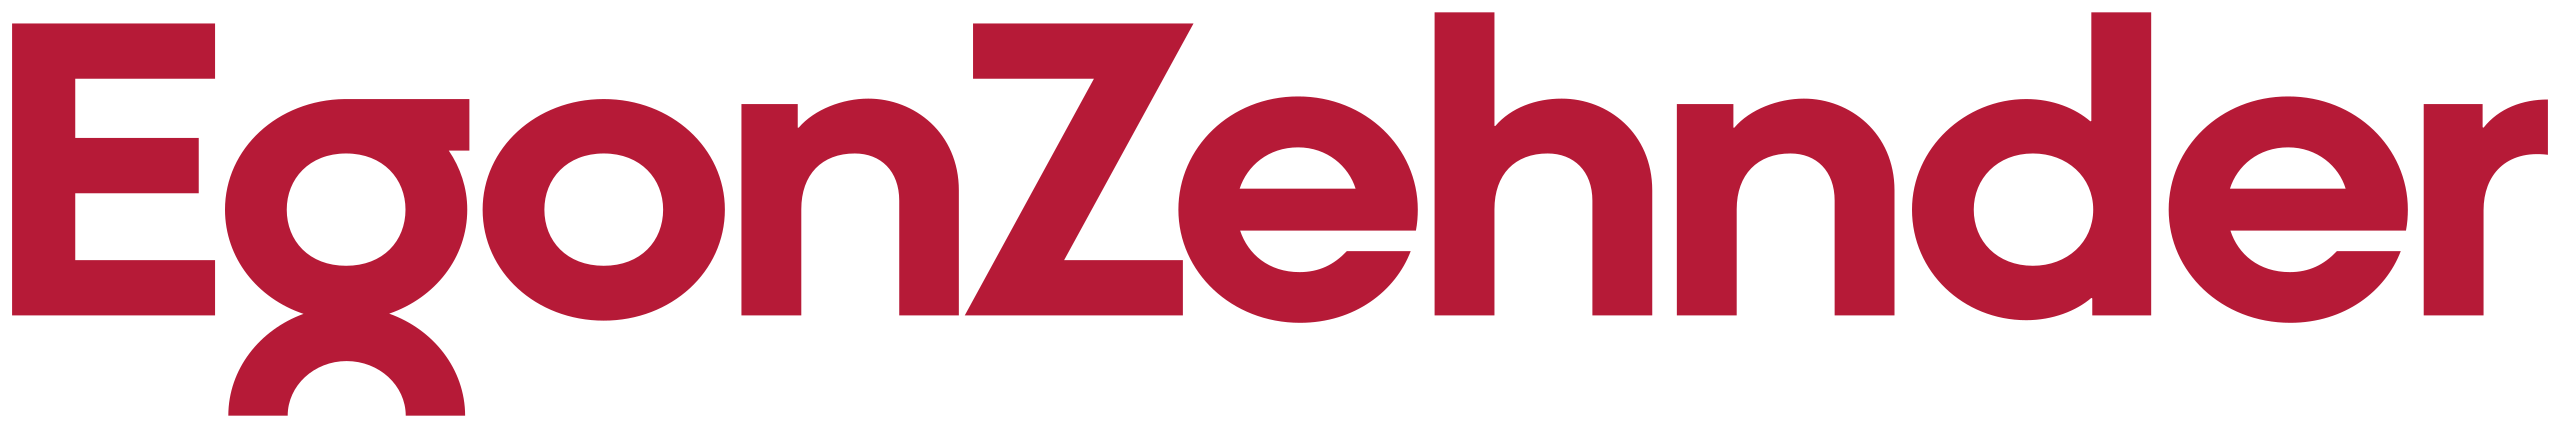 2560px-Egon_Zehnder_logo.svg